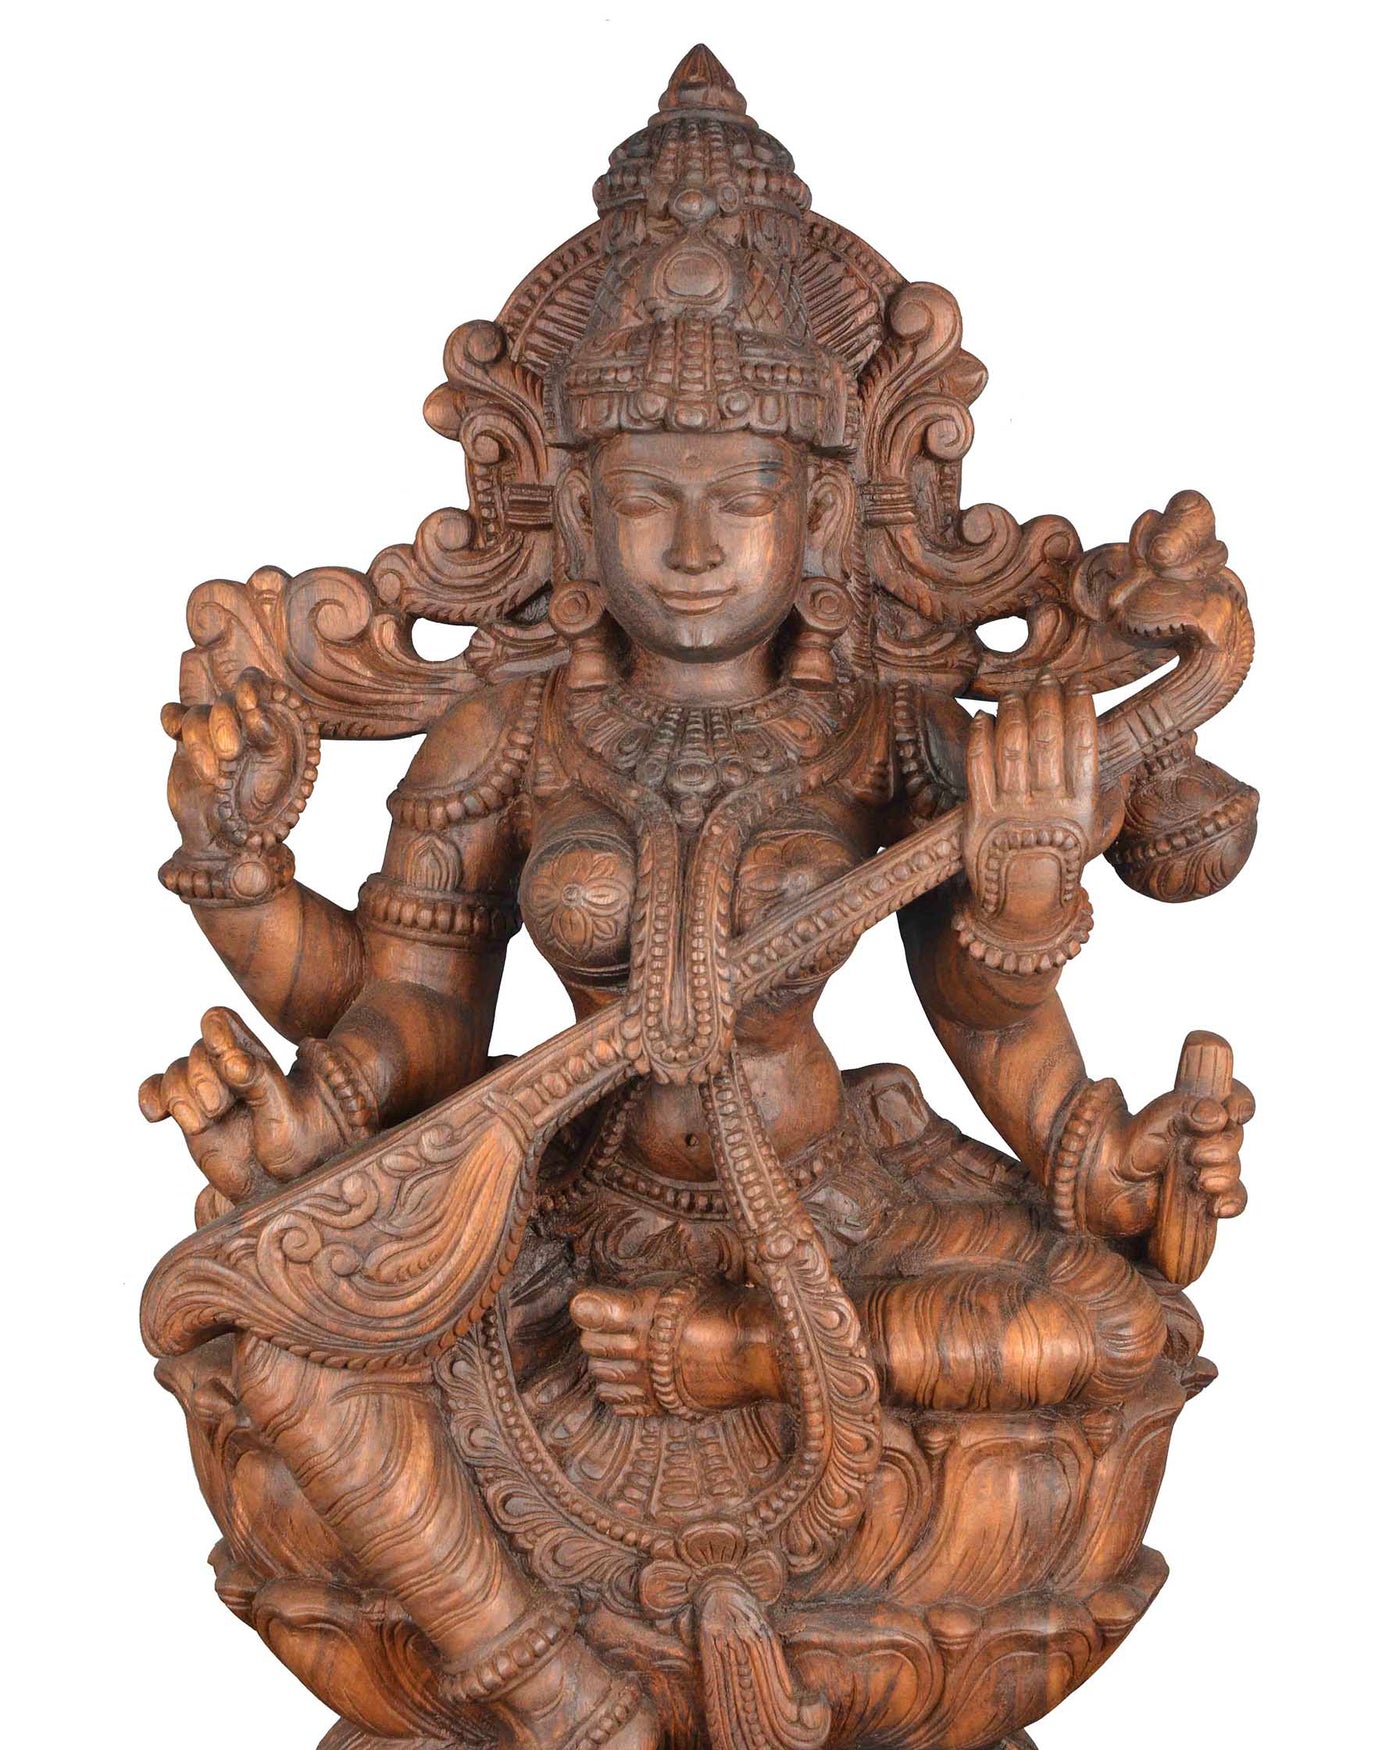 Goddess saraswathi maa wooden statue 37"